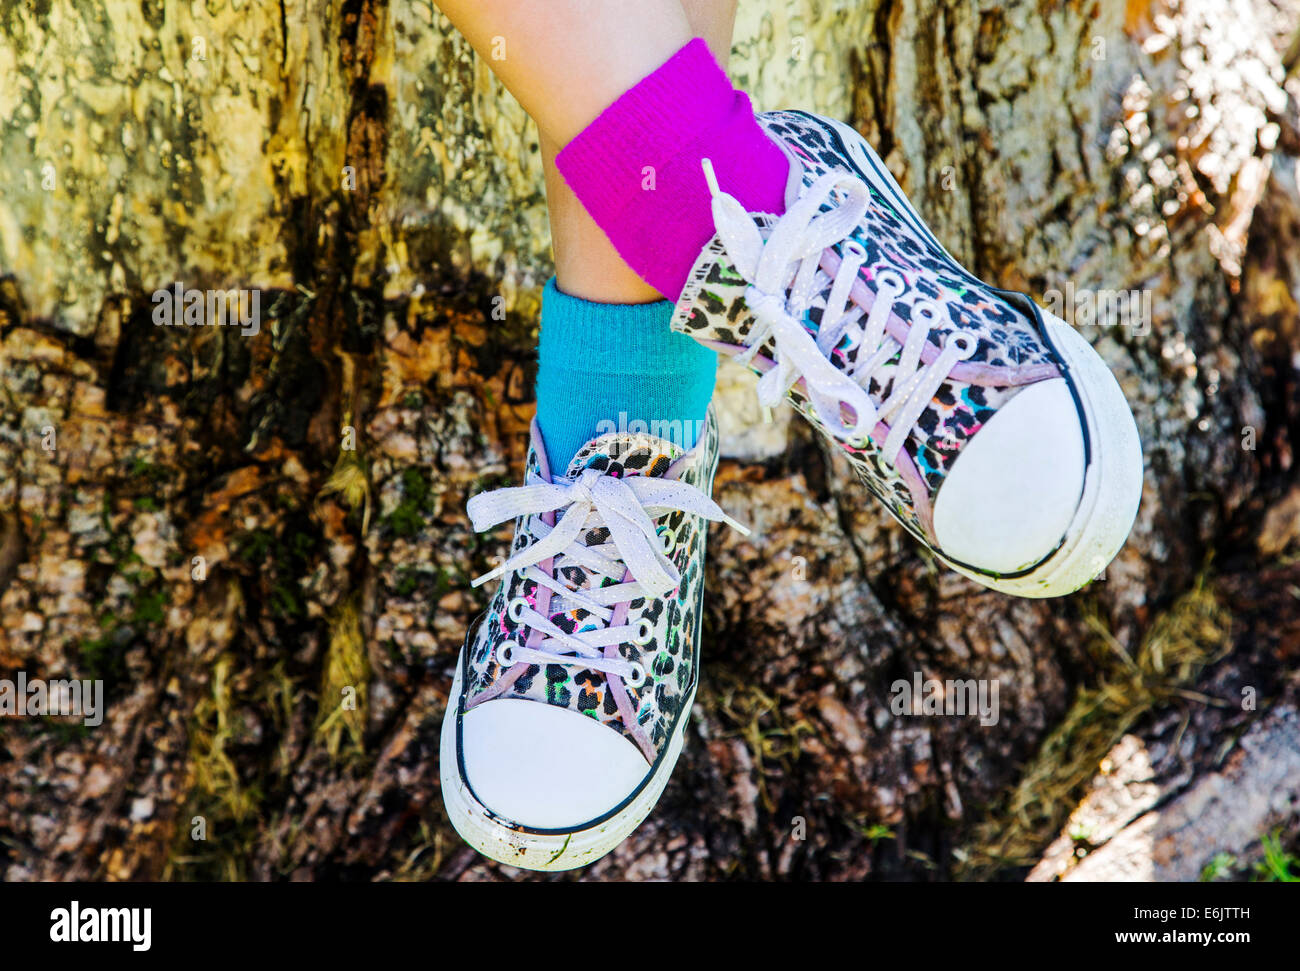 Fotografía de la niña de siete años, la colorista sneakers y dos colores diferentes de calcetines Foto de stock